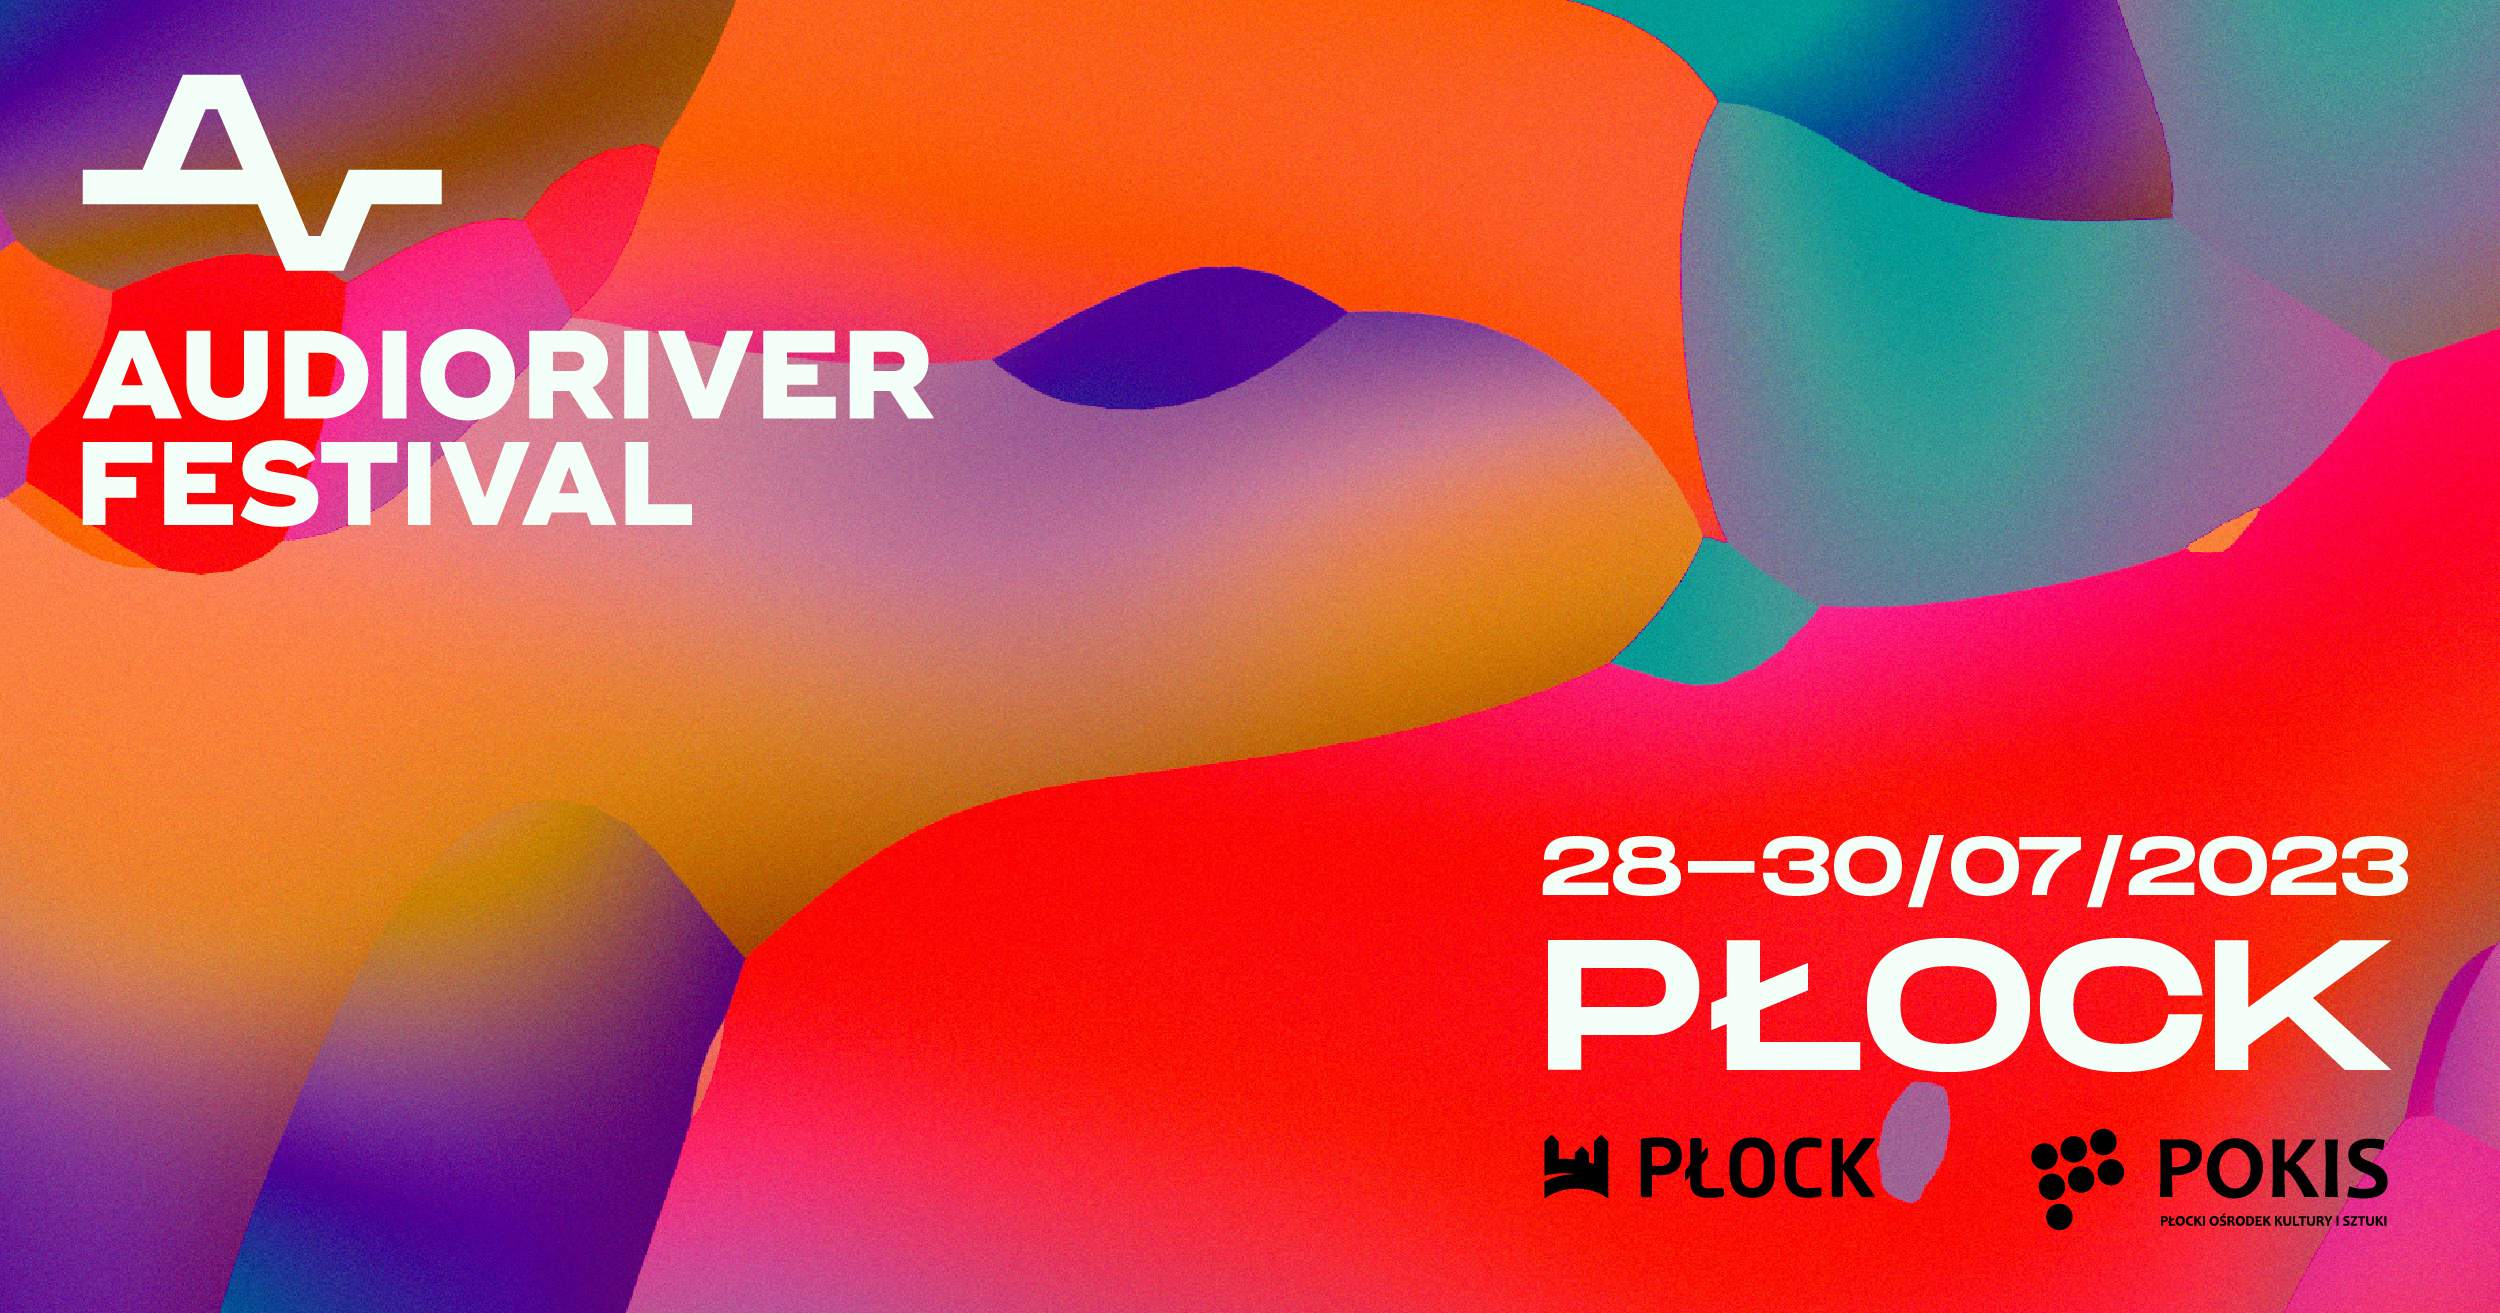 Audioriver Festival 2023 - フライヤー表